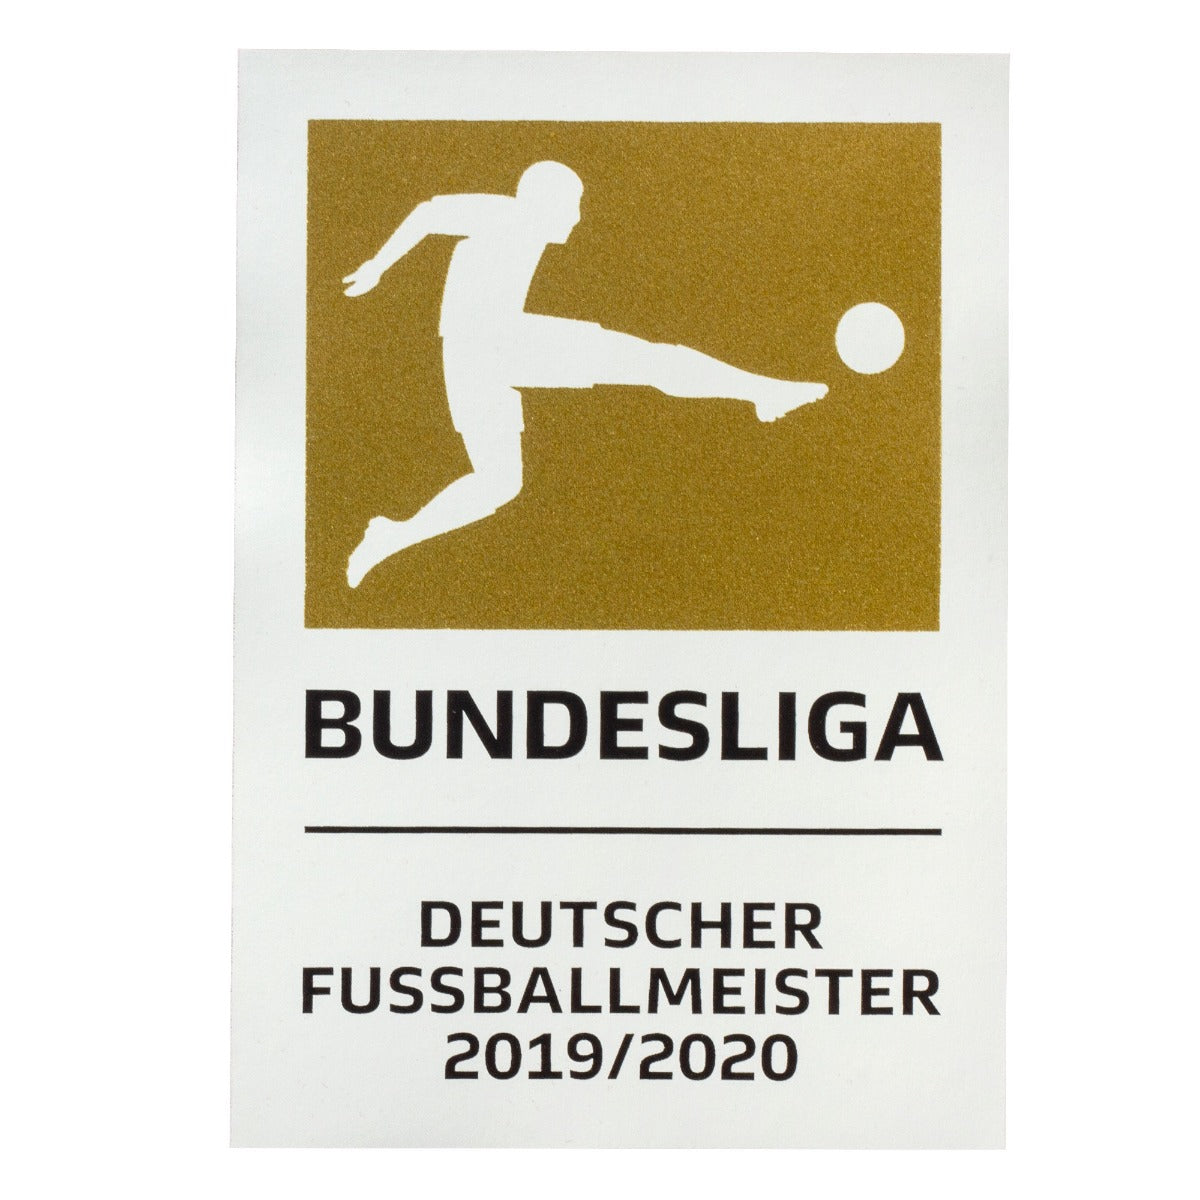 German Bundesliga Champion 2019/20 Gold Patch (Bayern Munich) (Main)